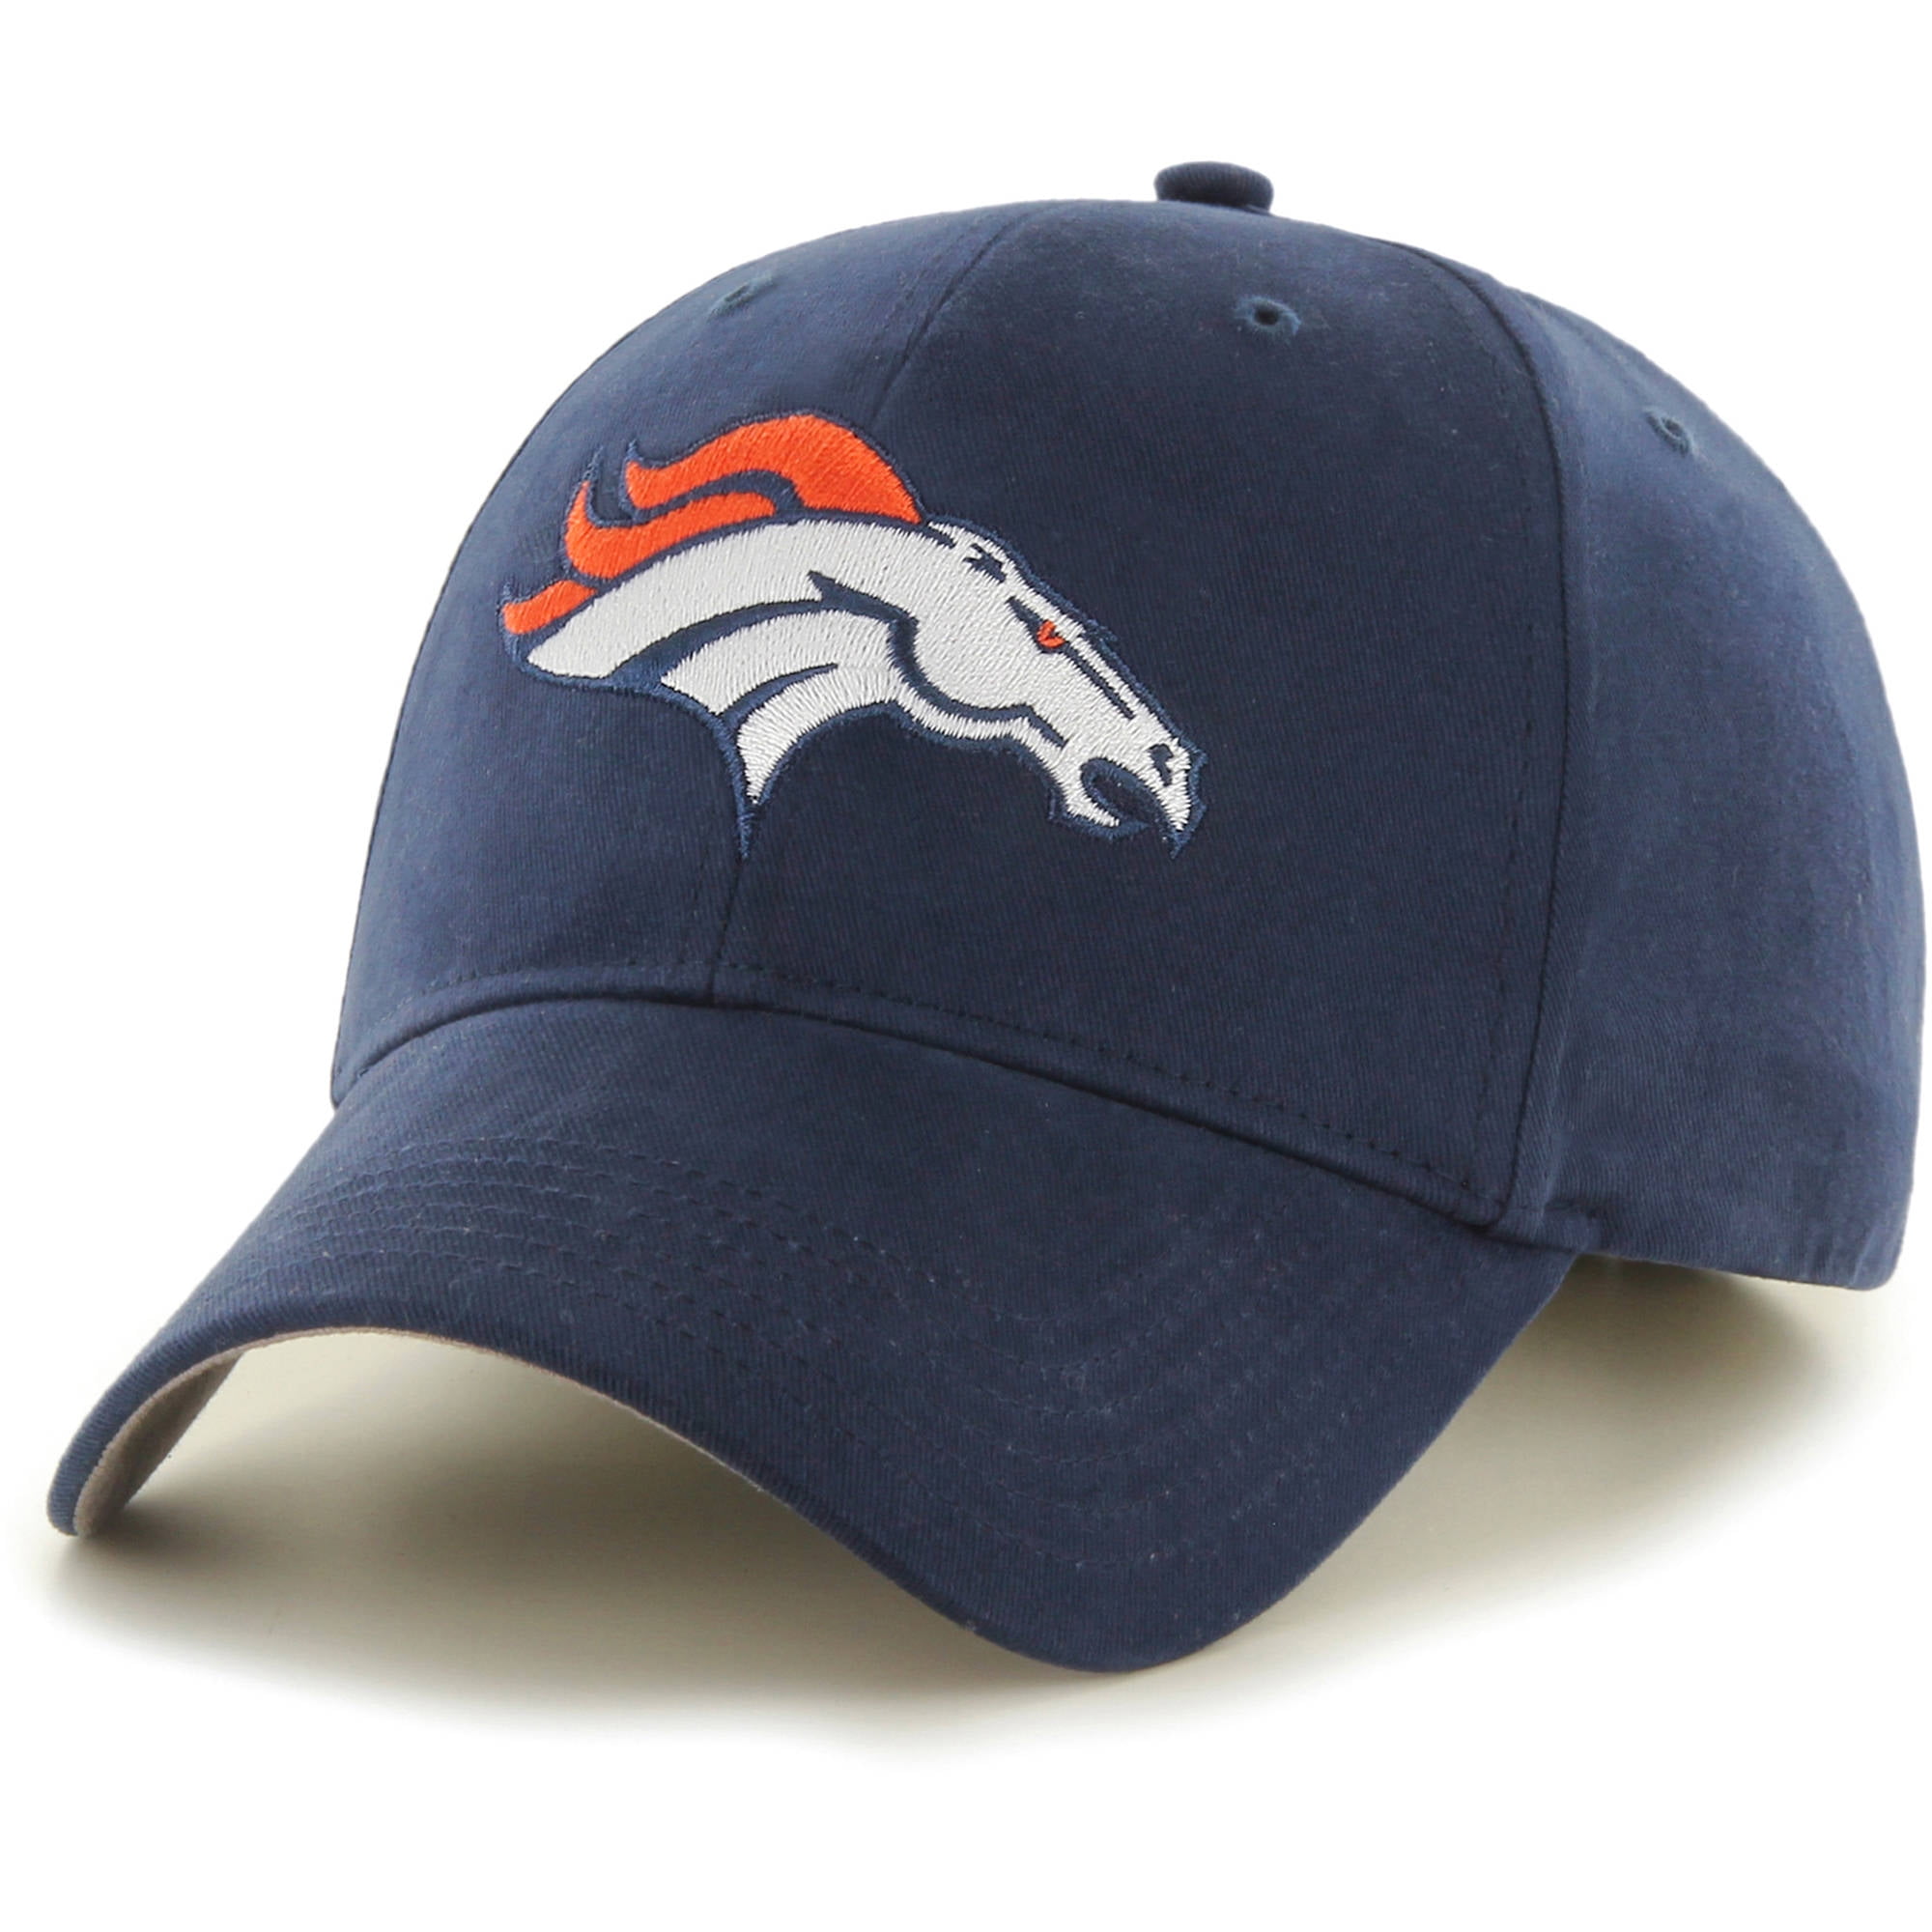 NFL Denver Broncos Basic Cap / Hat by Fan Favorite - Walmart.com